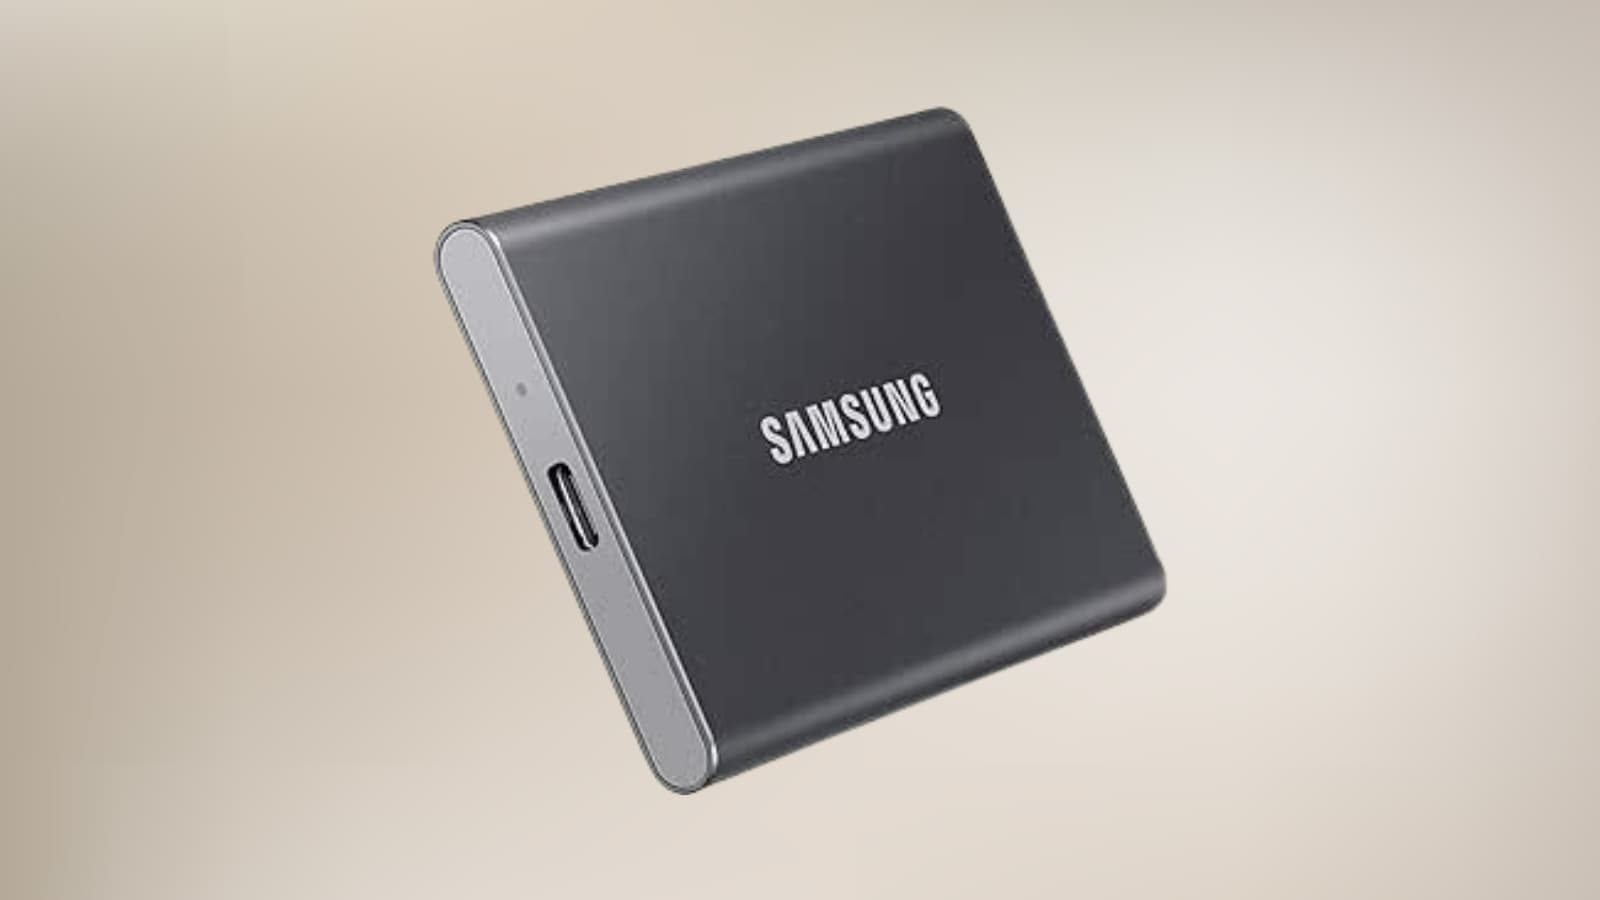 Manque de stockage sur votre Mac ? Le SSD Samsung T7 2To à son prix le plus